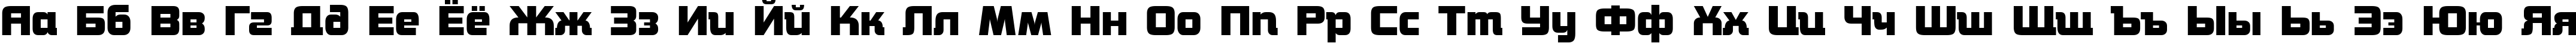 Пример написания русского алфавита шрифтом a_Concepto Bold